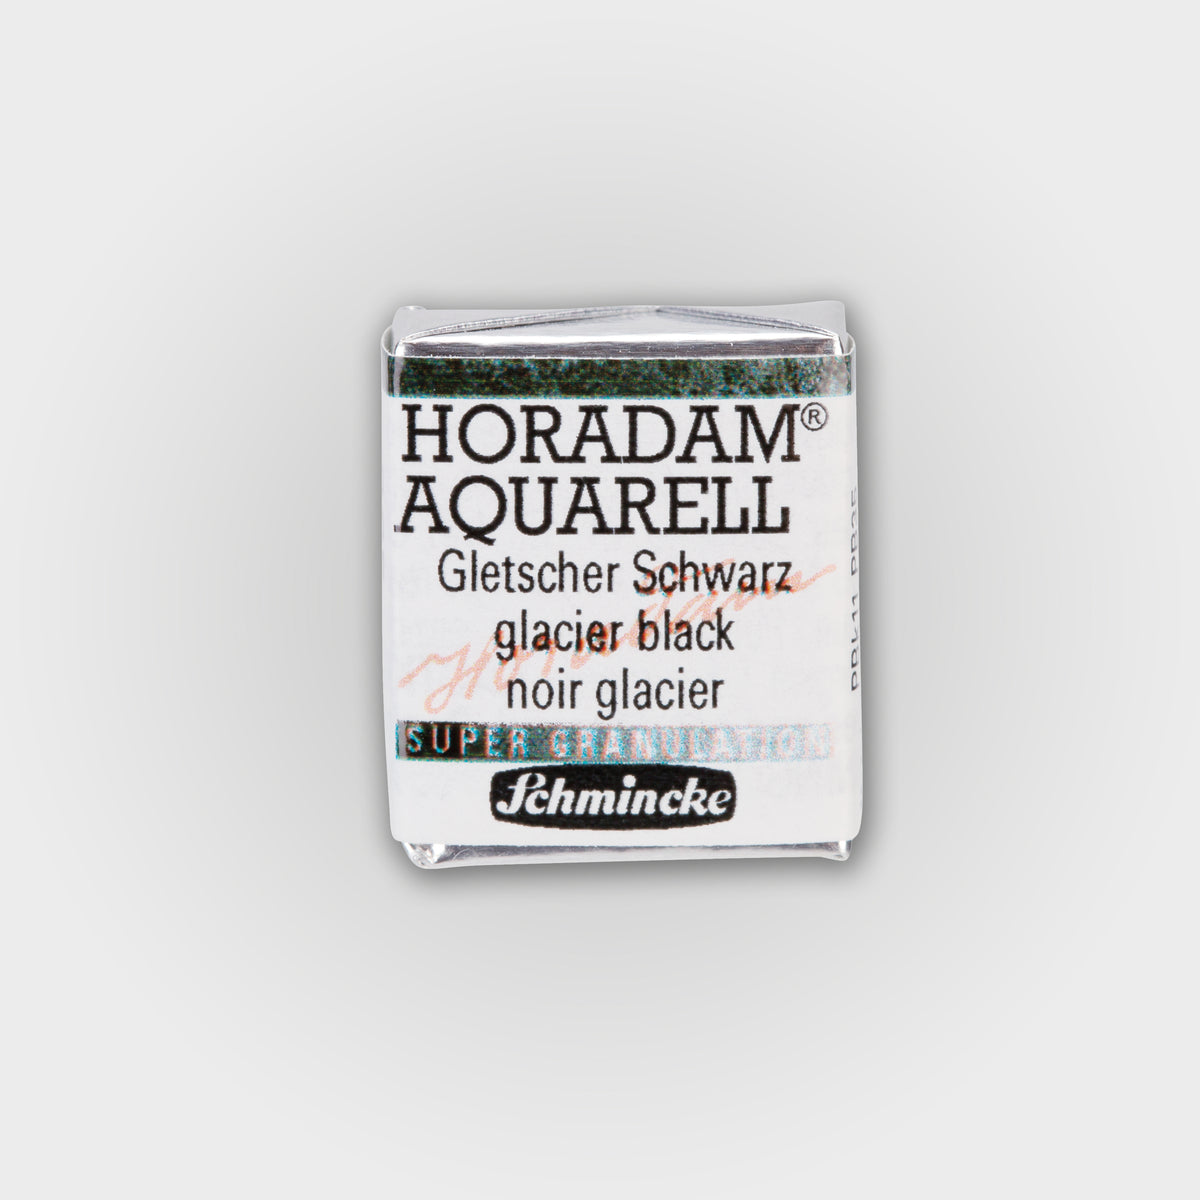 Schmincke Horadam® Super granulating Half pan 965 Glacier black 3